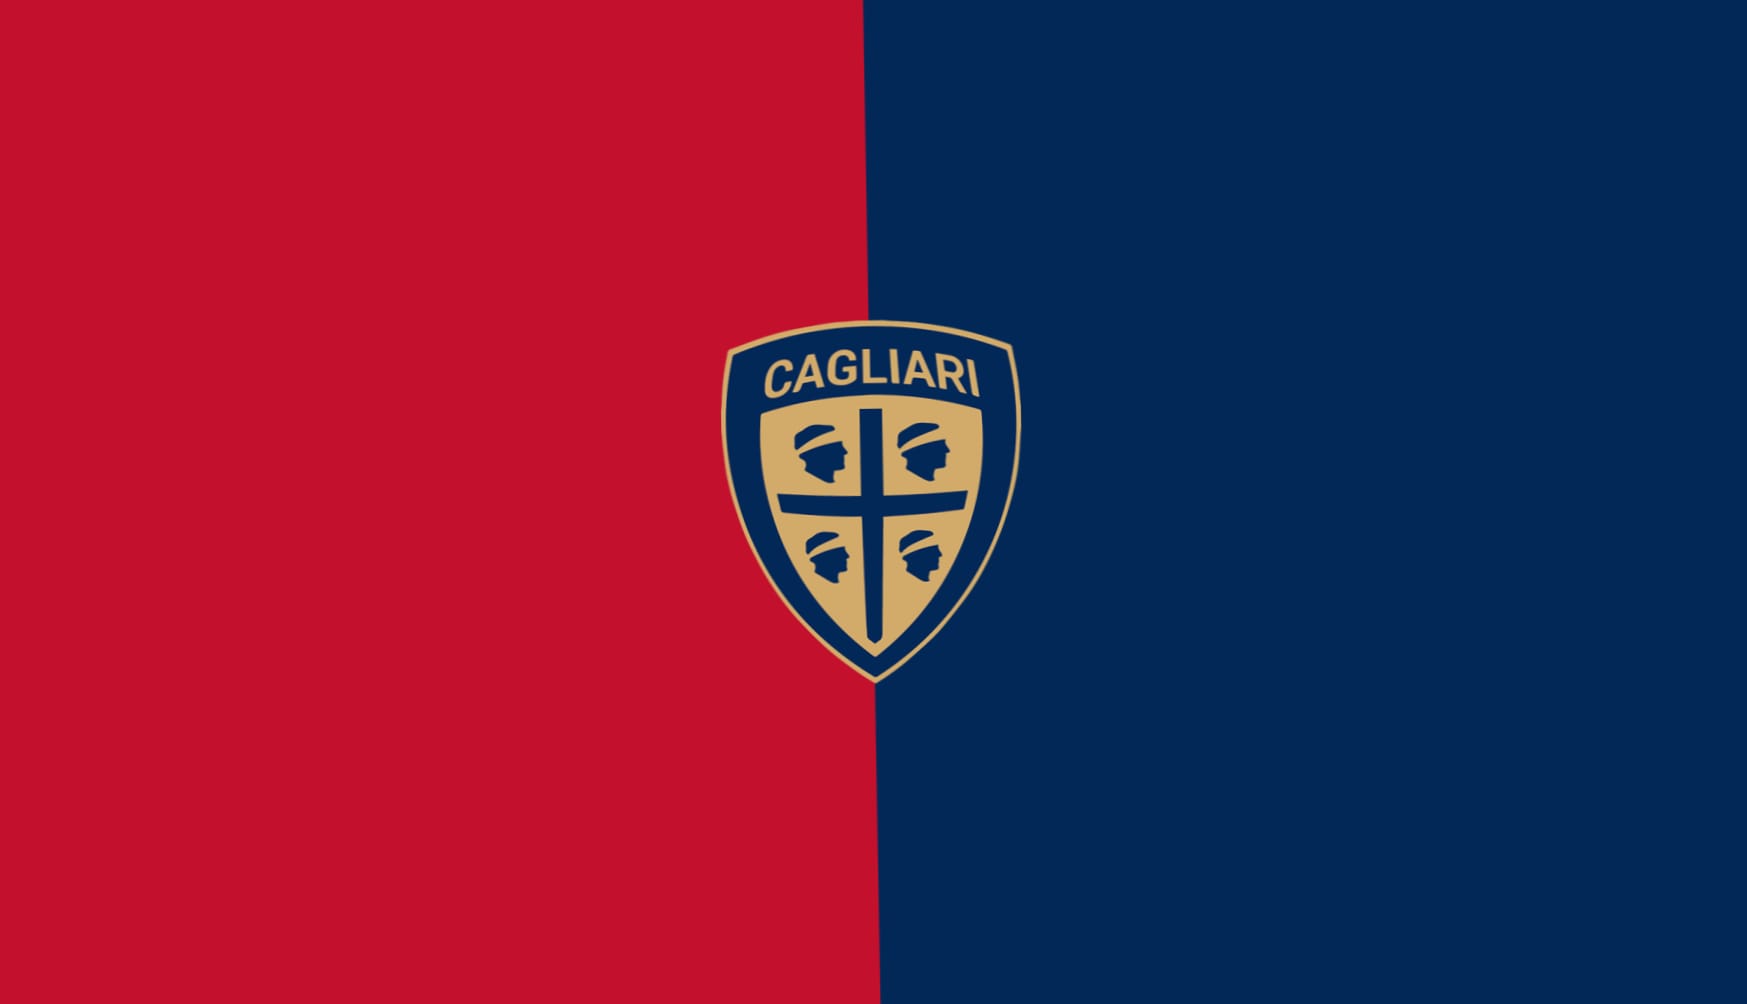 Cagliari Calcio at 1024 x 768 size wallpapers HD quality